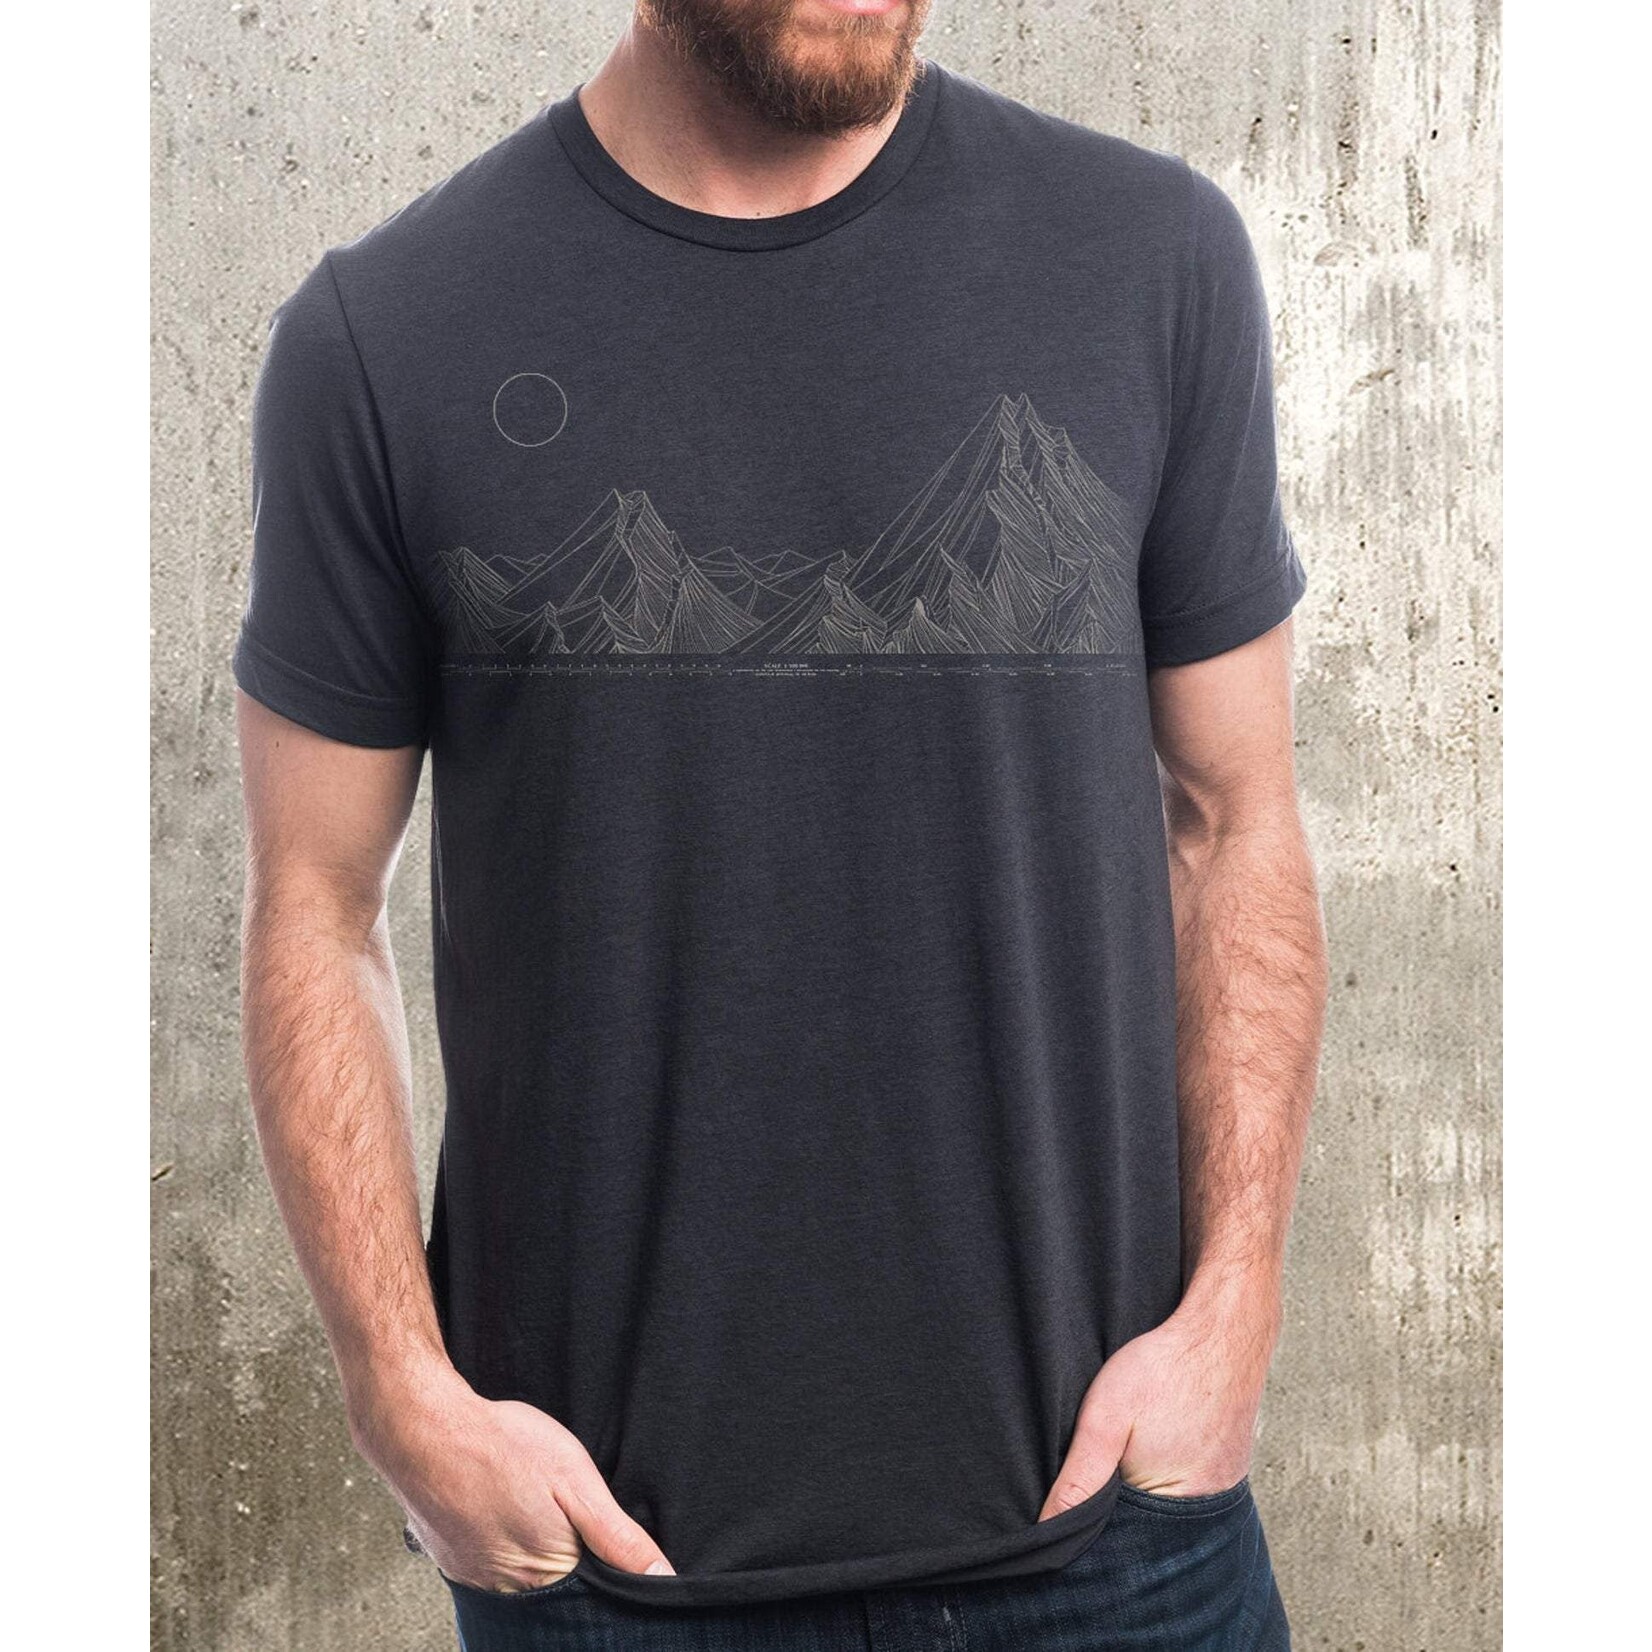 Black Lantern Mountain Range Mapping T Shirt